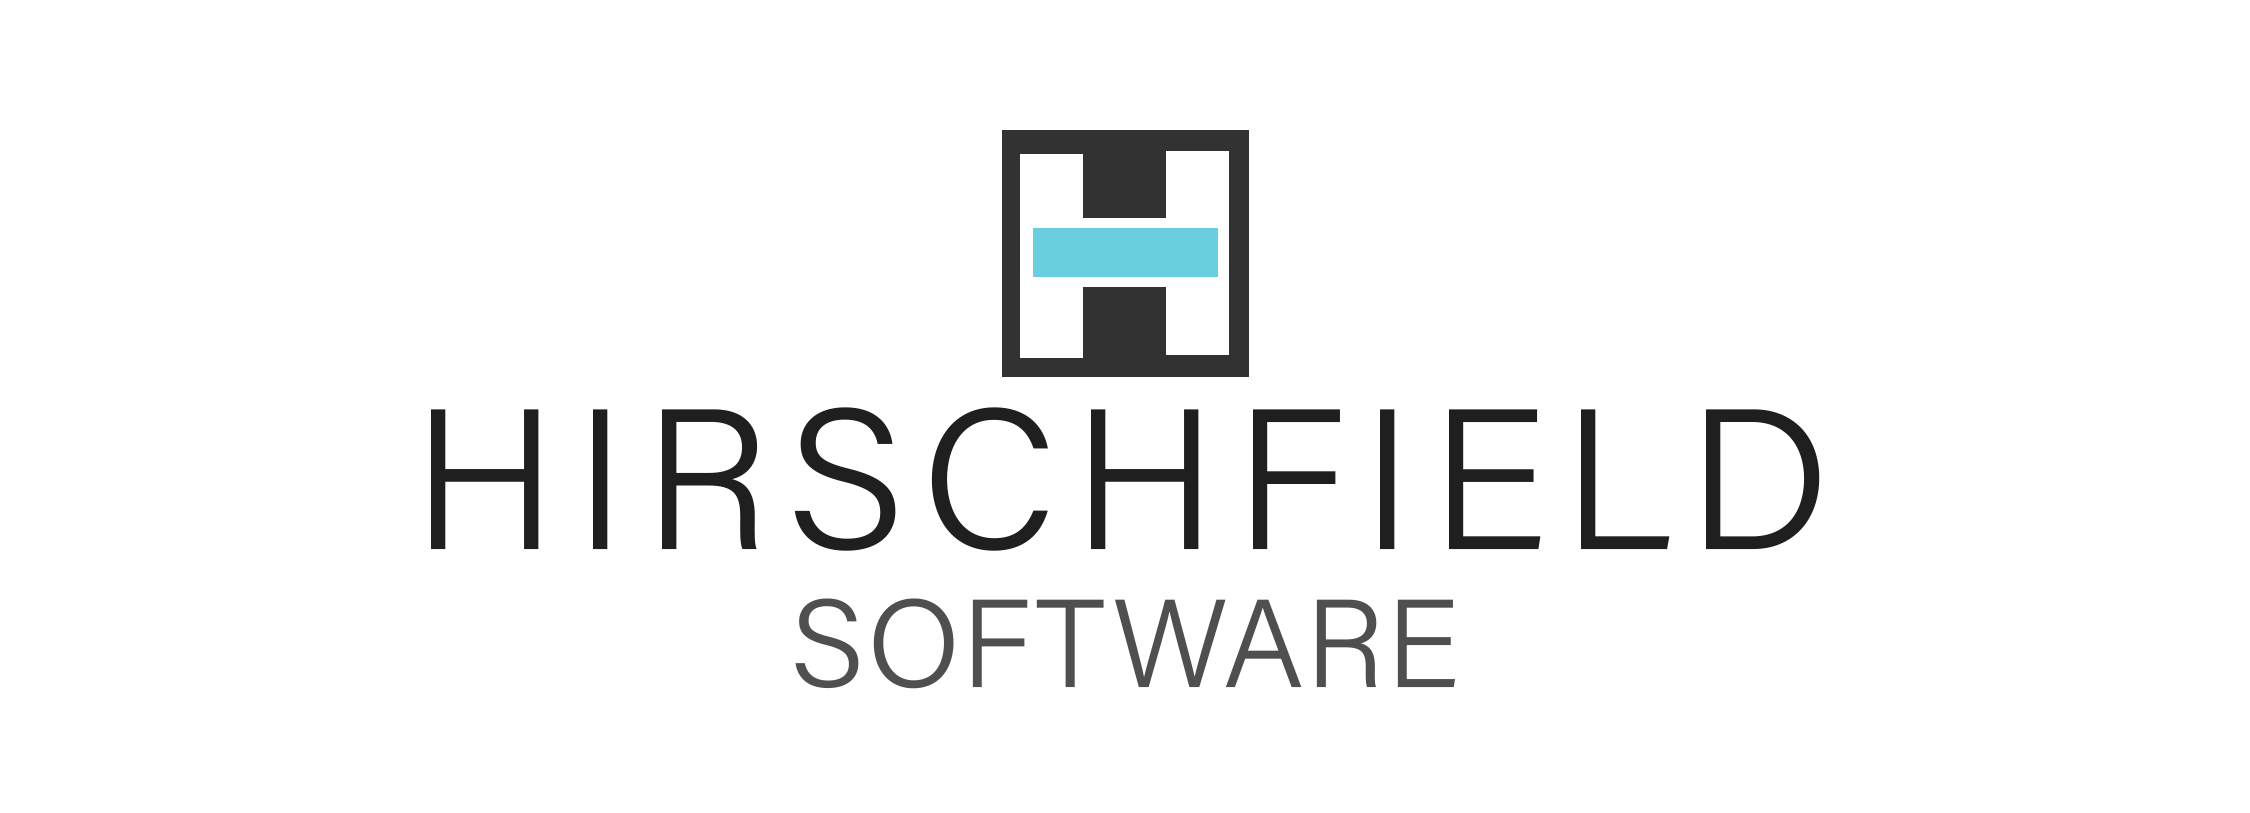 Hirschfield Software Logo